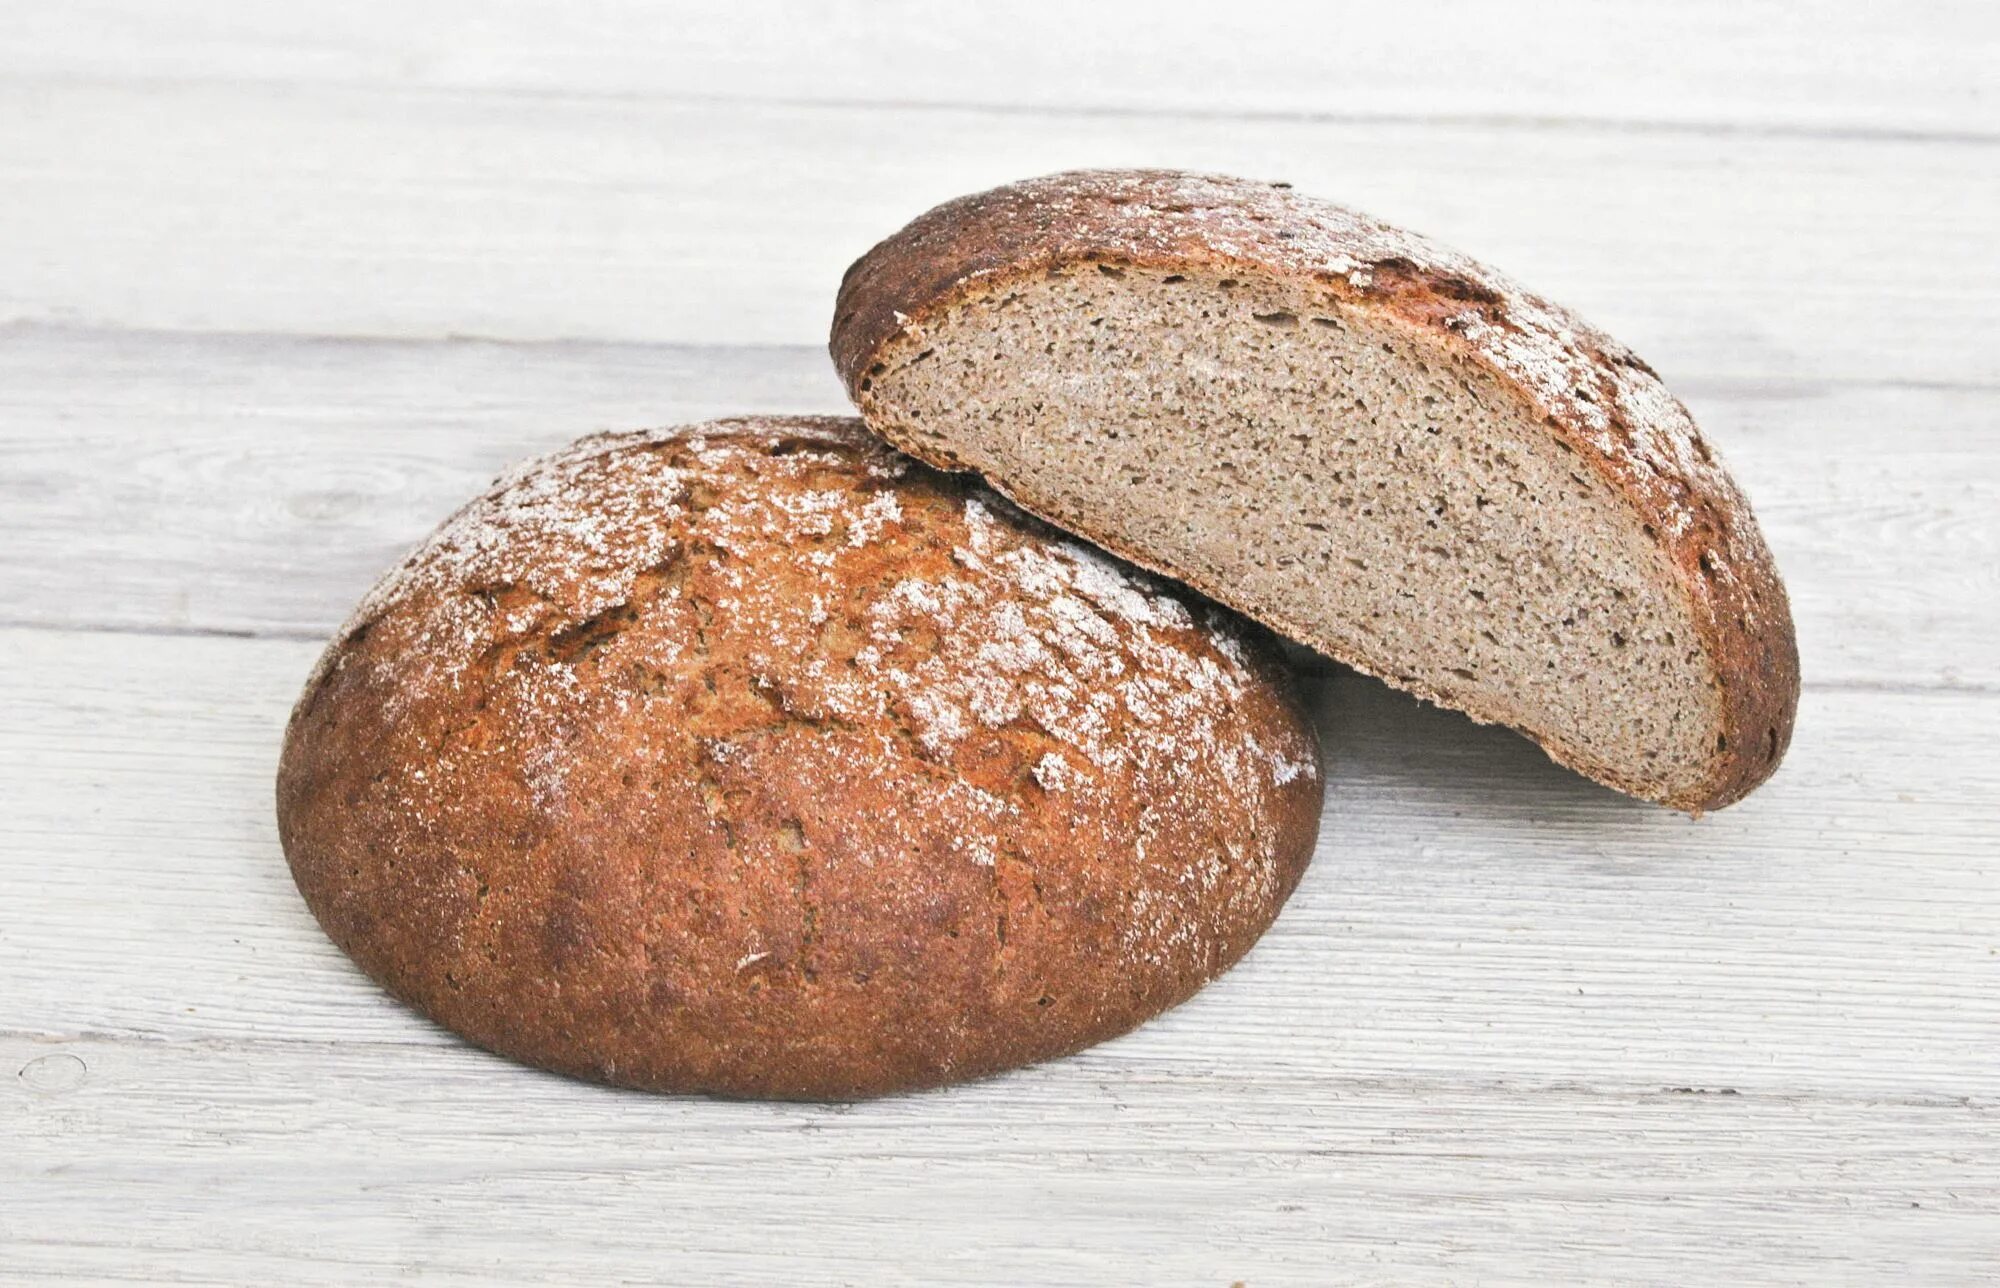 Хлеб ржанопшеничный поддовый. Хлеб ржано-пшеничный подовый. Хлеб пшеничный деревенский подовый. Хлеб пшеничный отрубной. Ржаной хлеб смесь